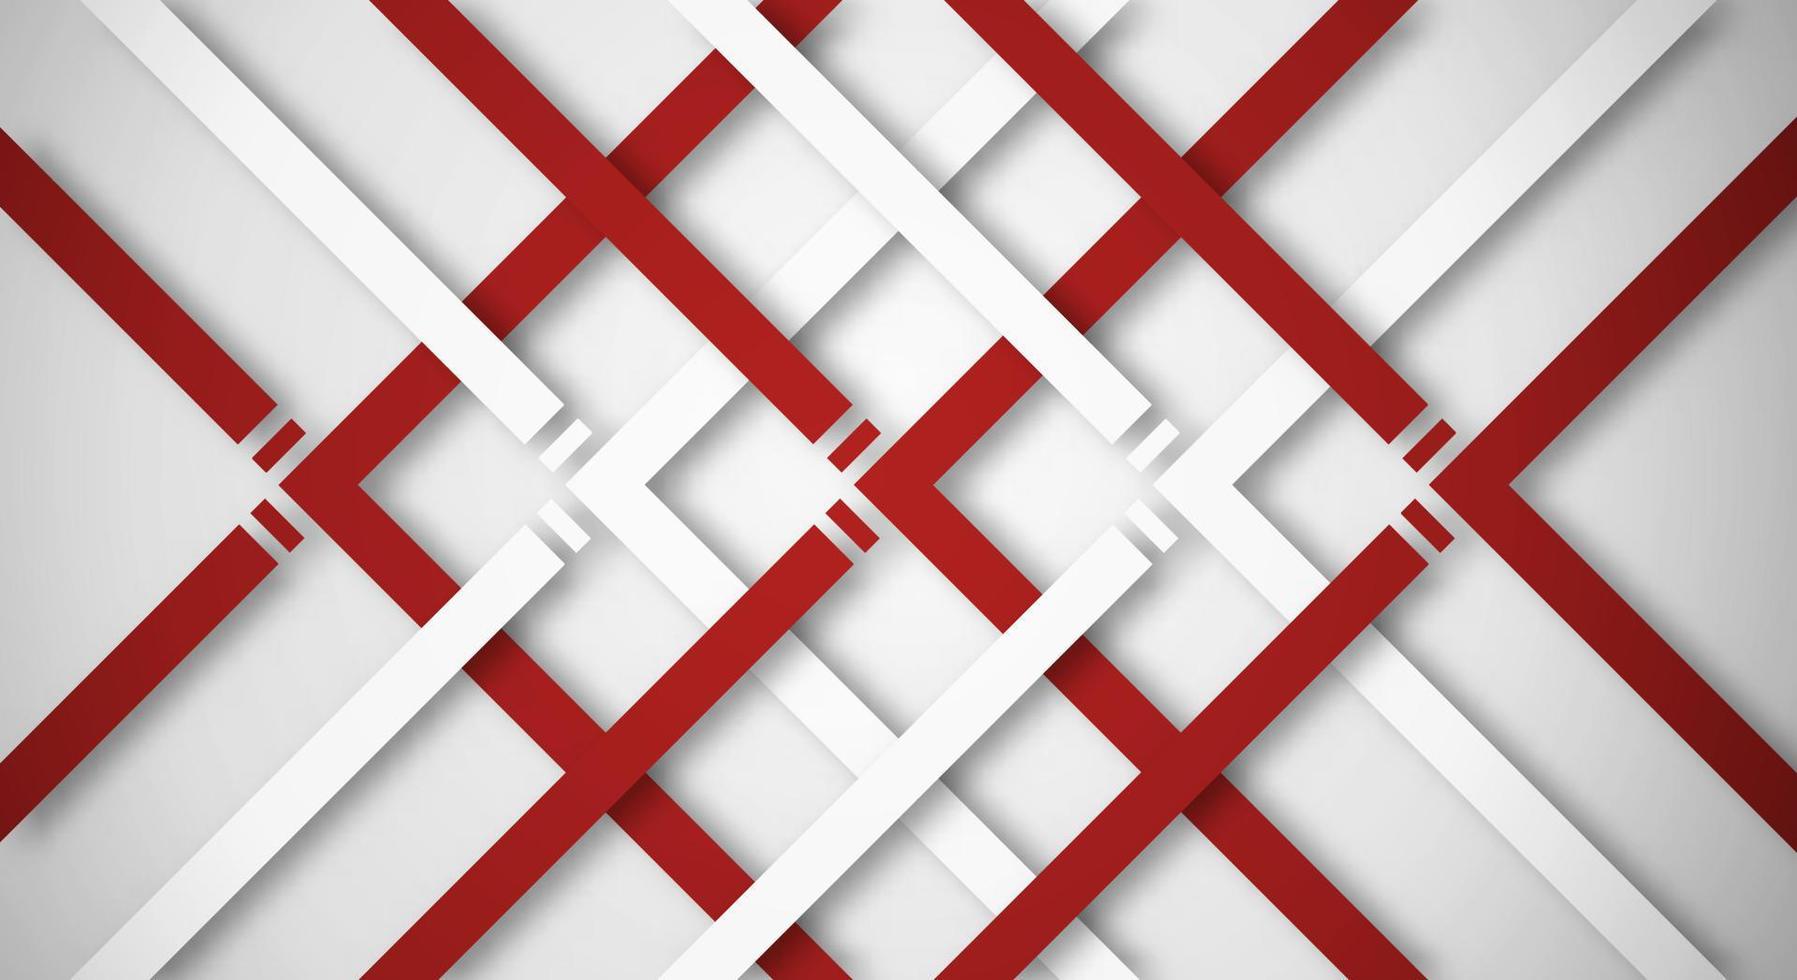 abstrait blanc 3d avec des lignes rouges et blanches style papier découpé texturé. utilisable pour la mise en page Web décorative, l'affiche, la bannière, la brochure d'entreprise et la conception de modèles de séminaire vecteur